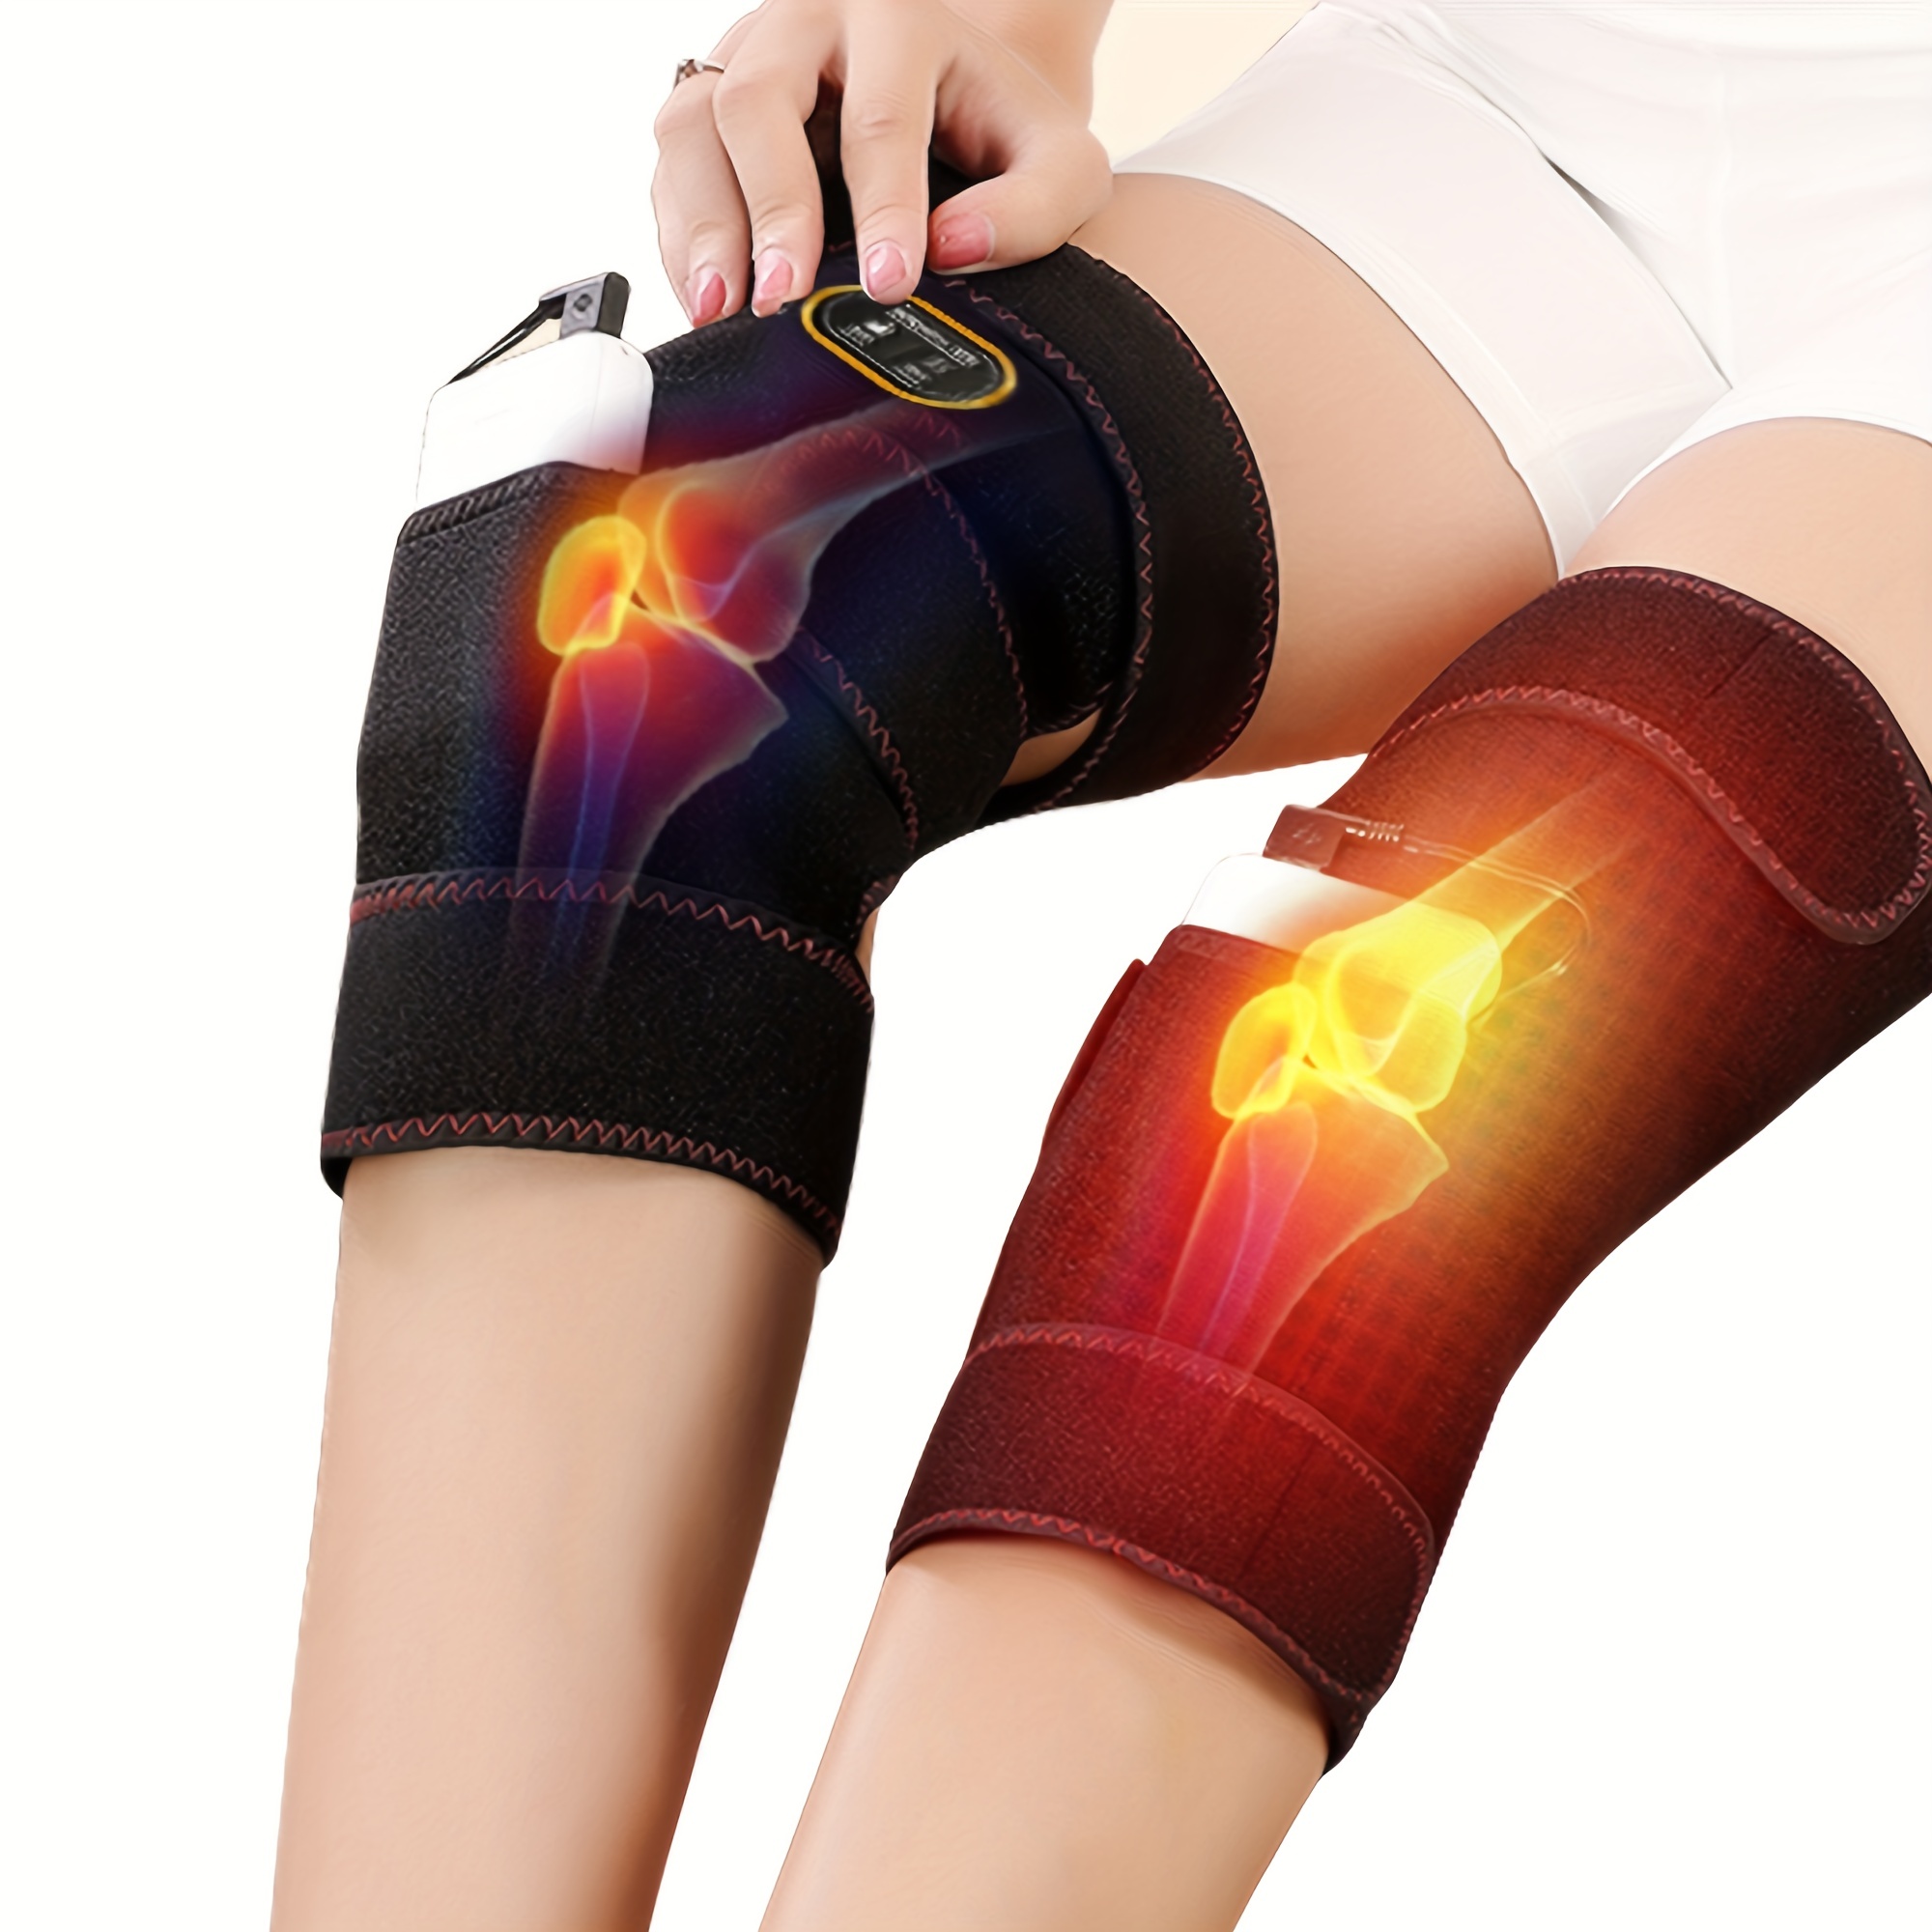 Knee Heating Pad,Knee Braces with 3 Adjustable Heat-settings,Knee